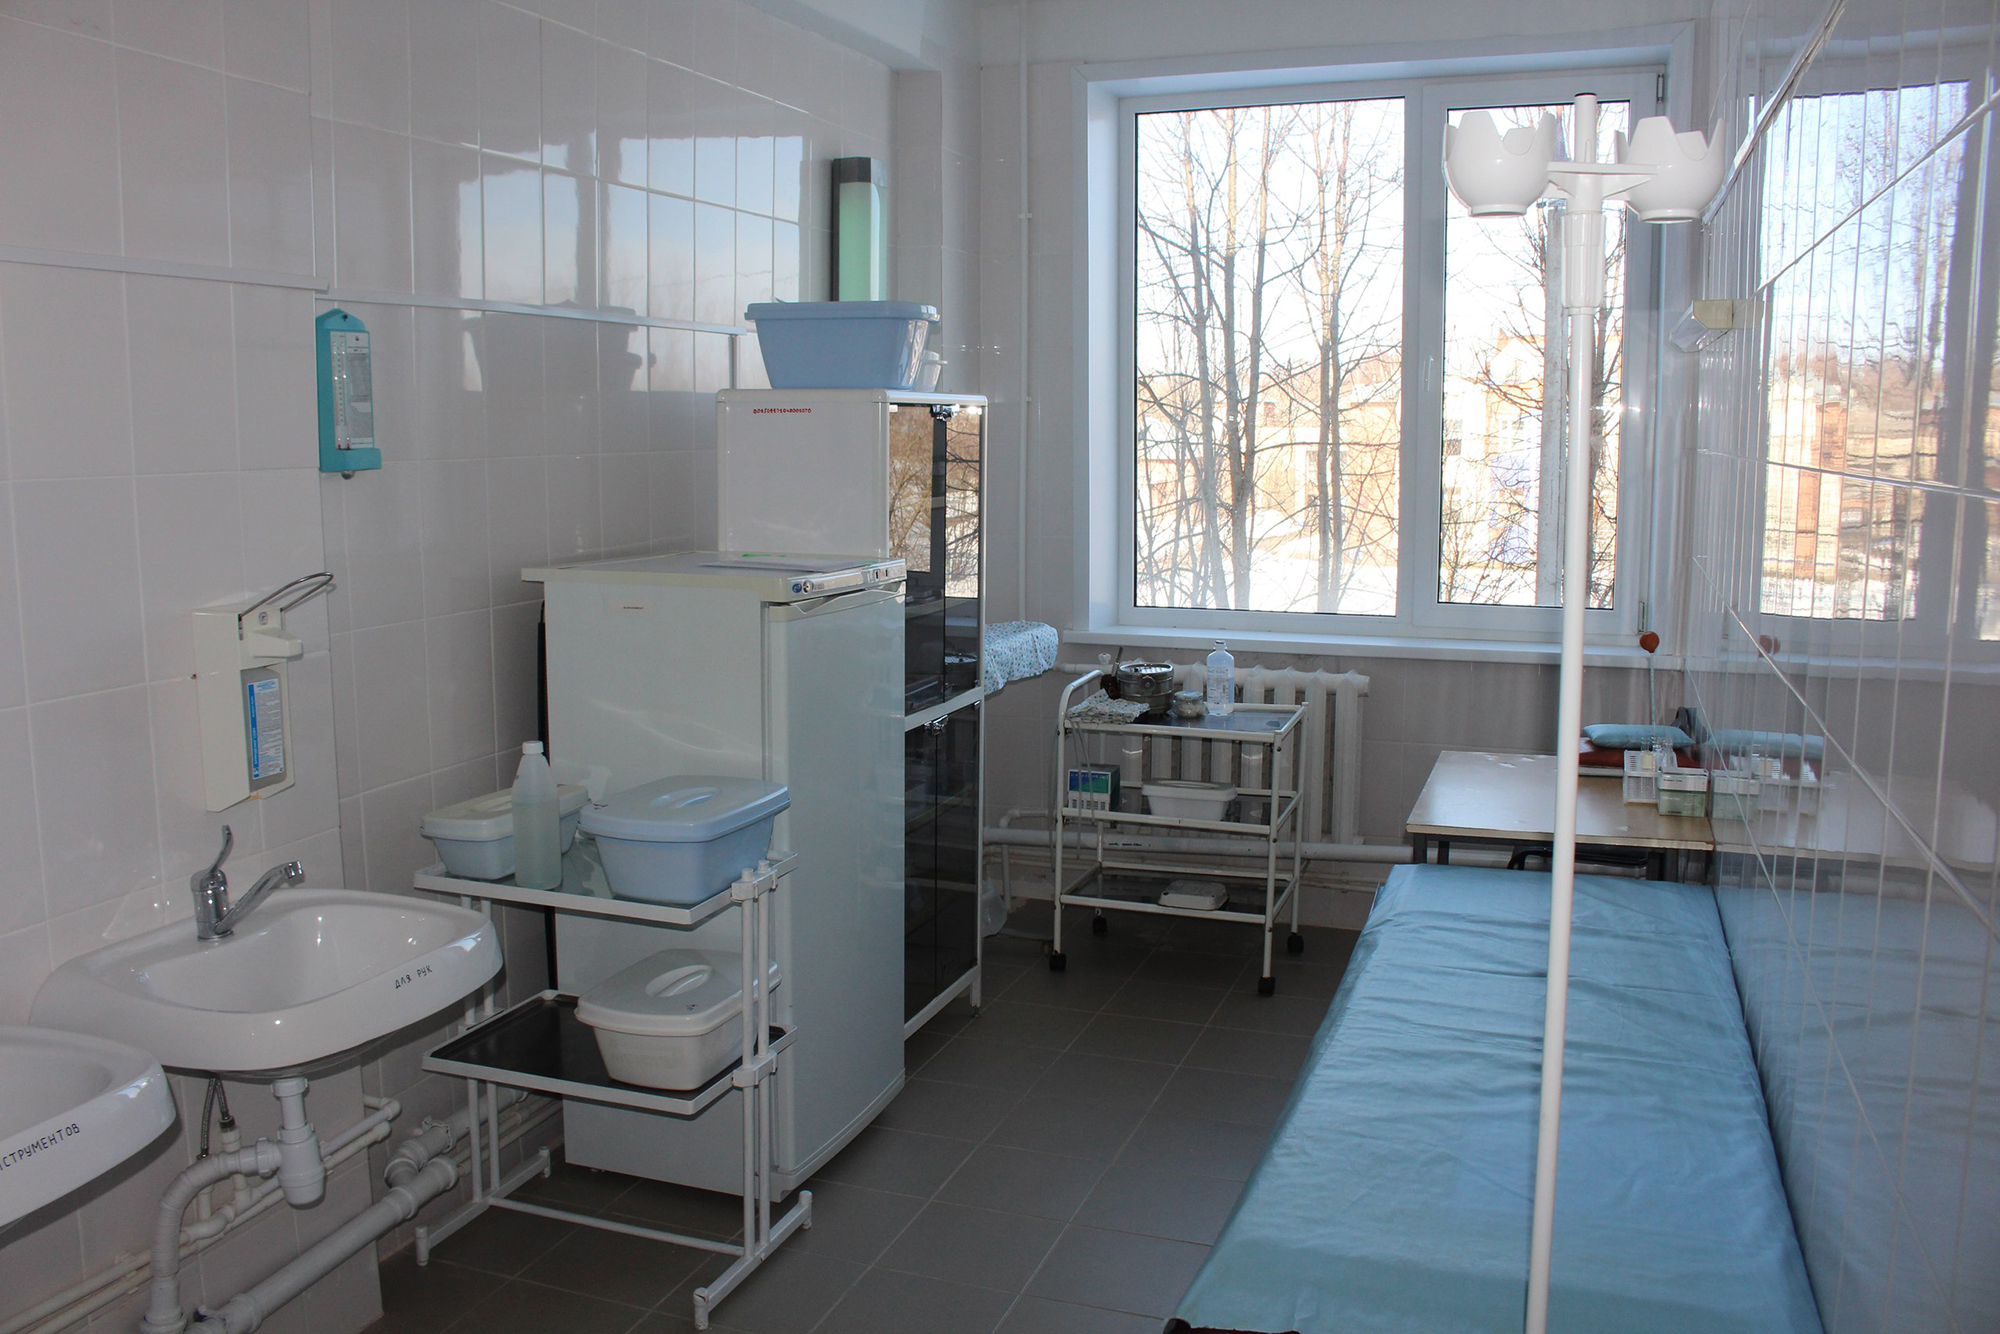 62 Онкологическая больница Москва на Войковской